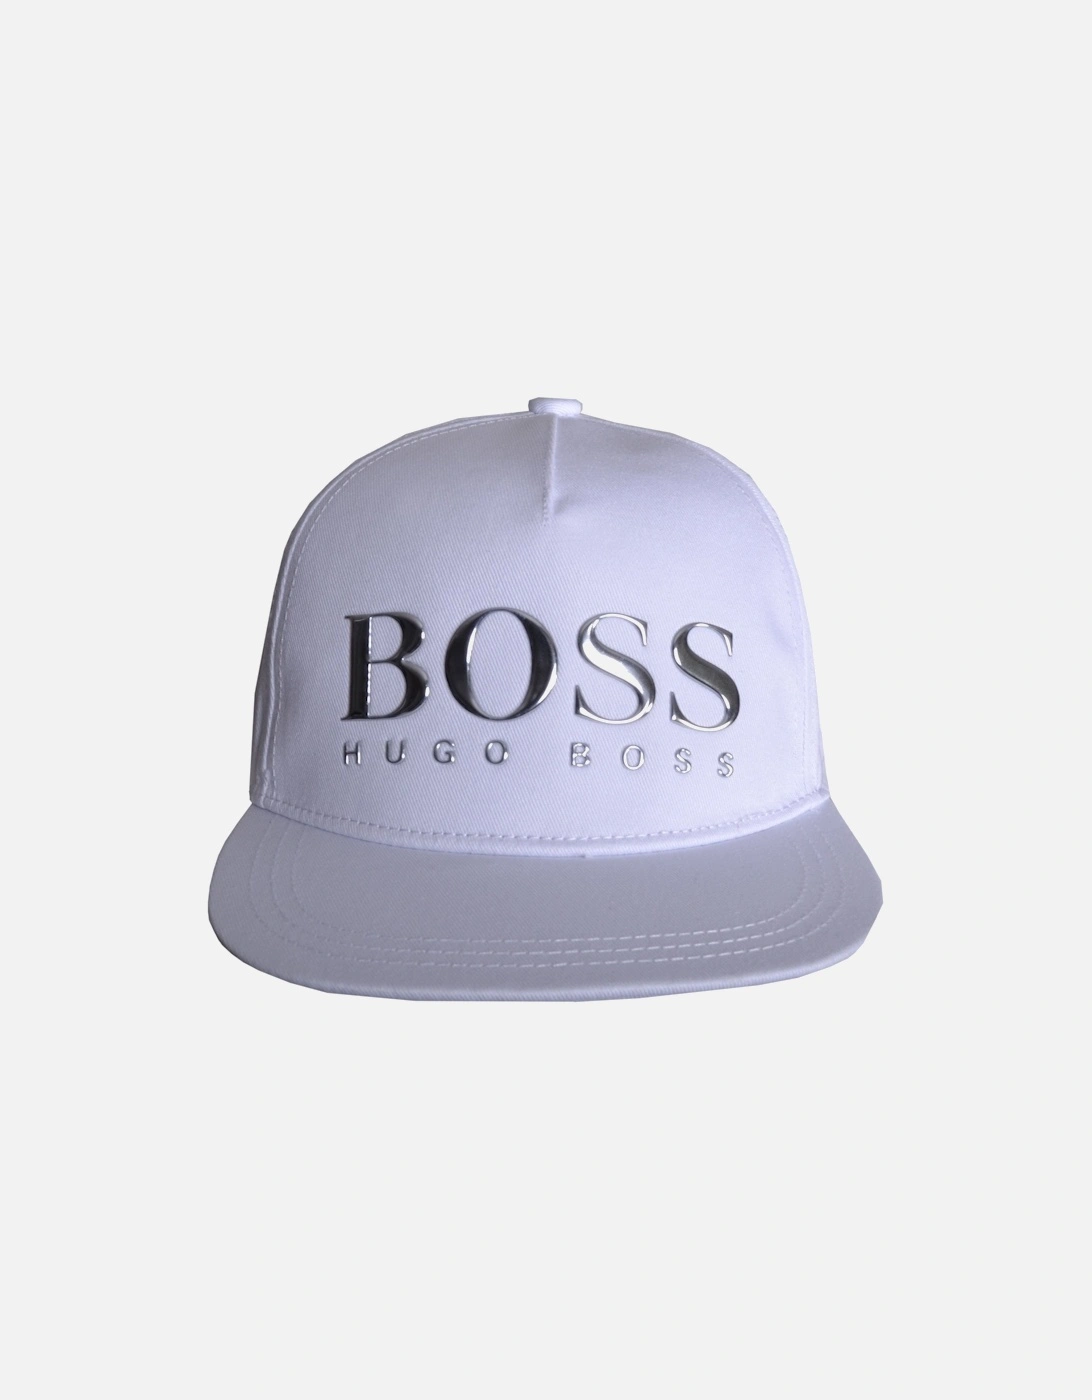 Hugo Boss Boy's White Cap- [Size: 54 only]